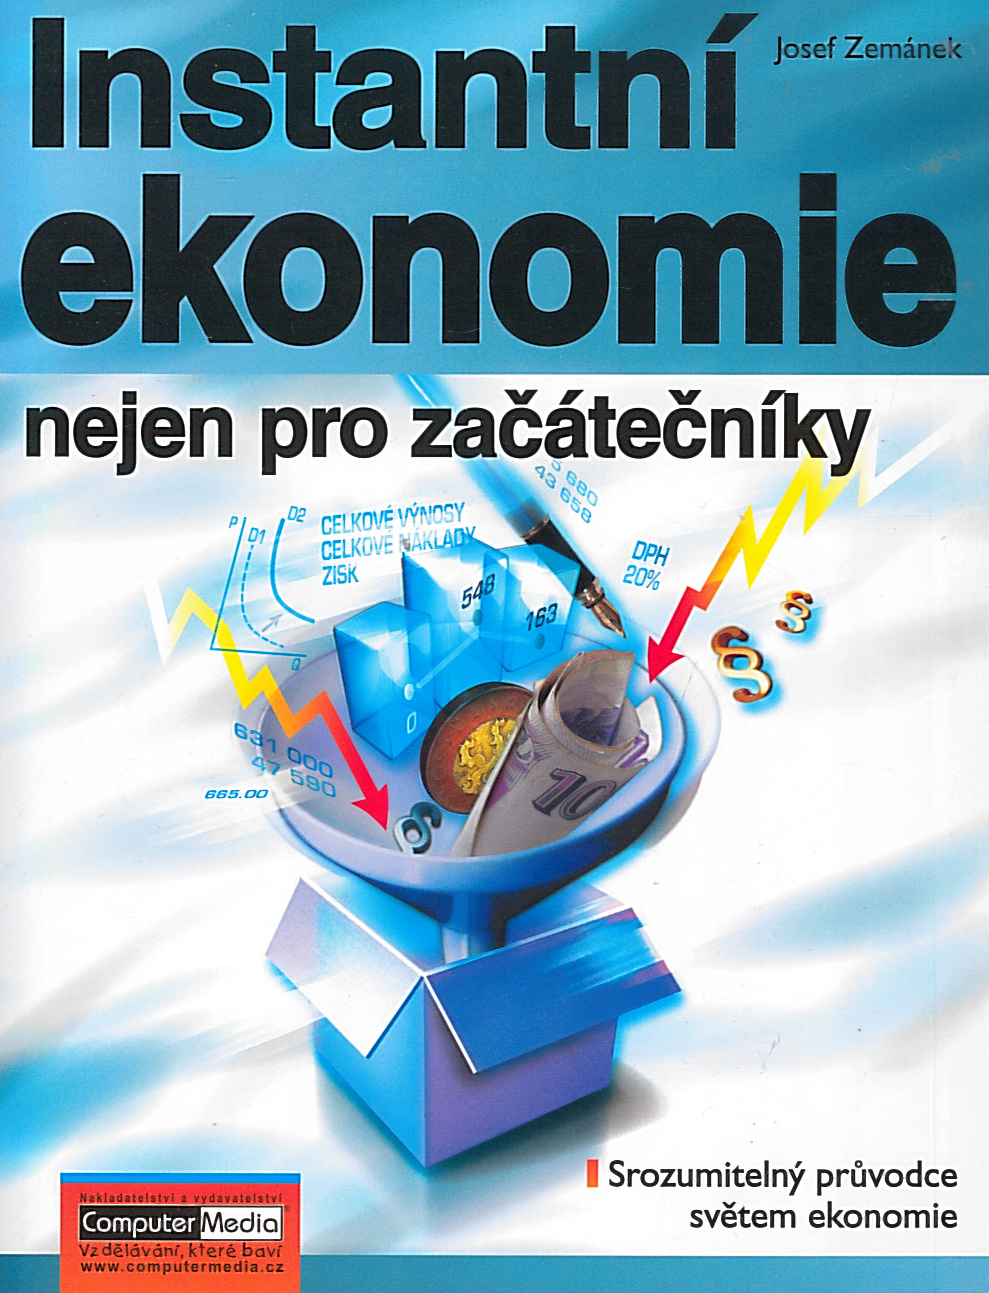 Instantní ekonomie nejen pro začátečníky (Josef Zemánek)